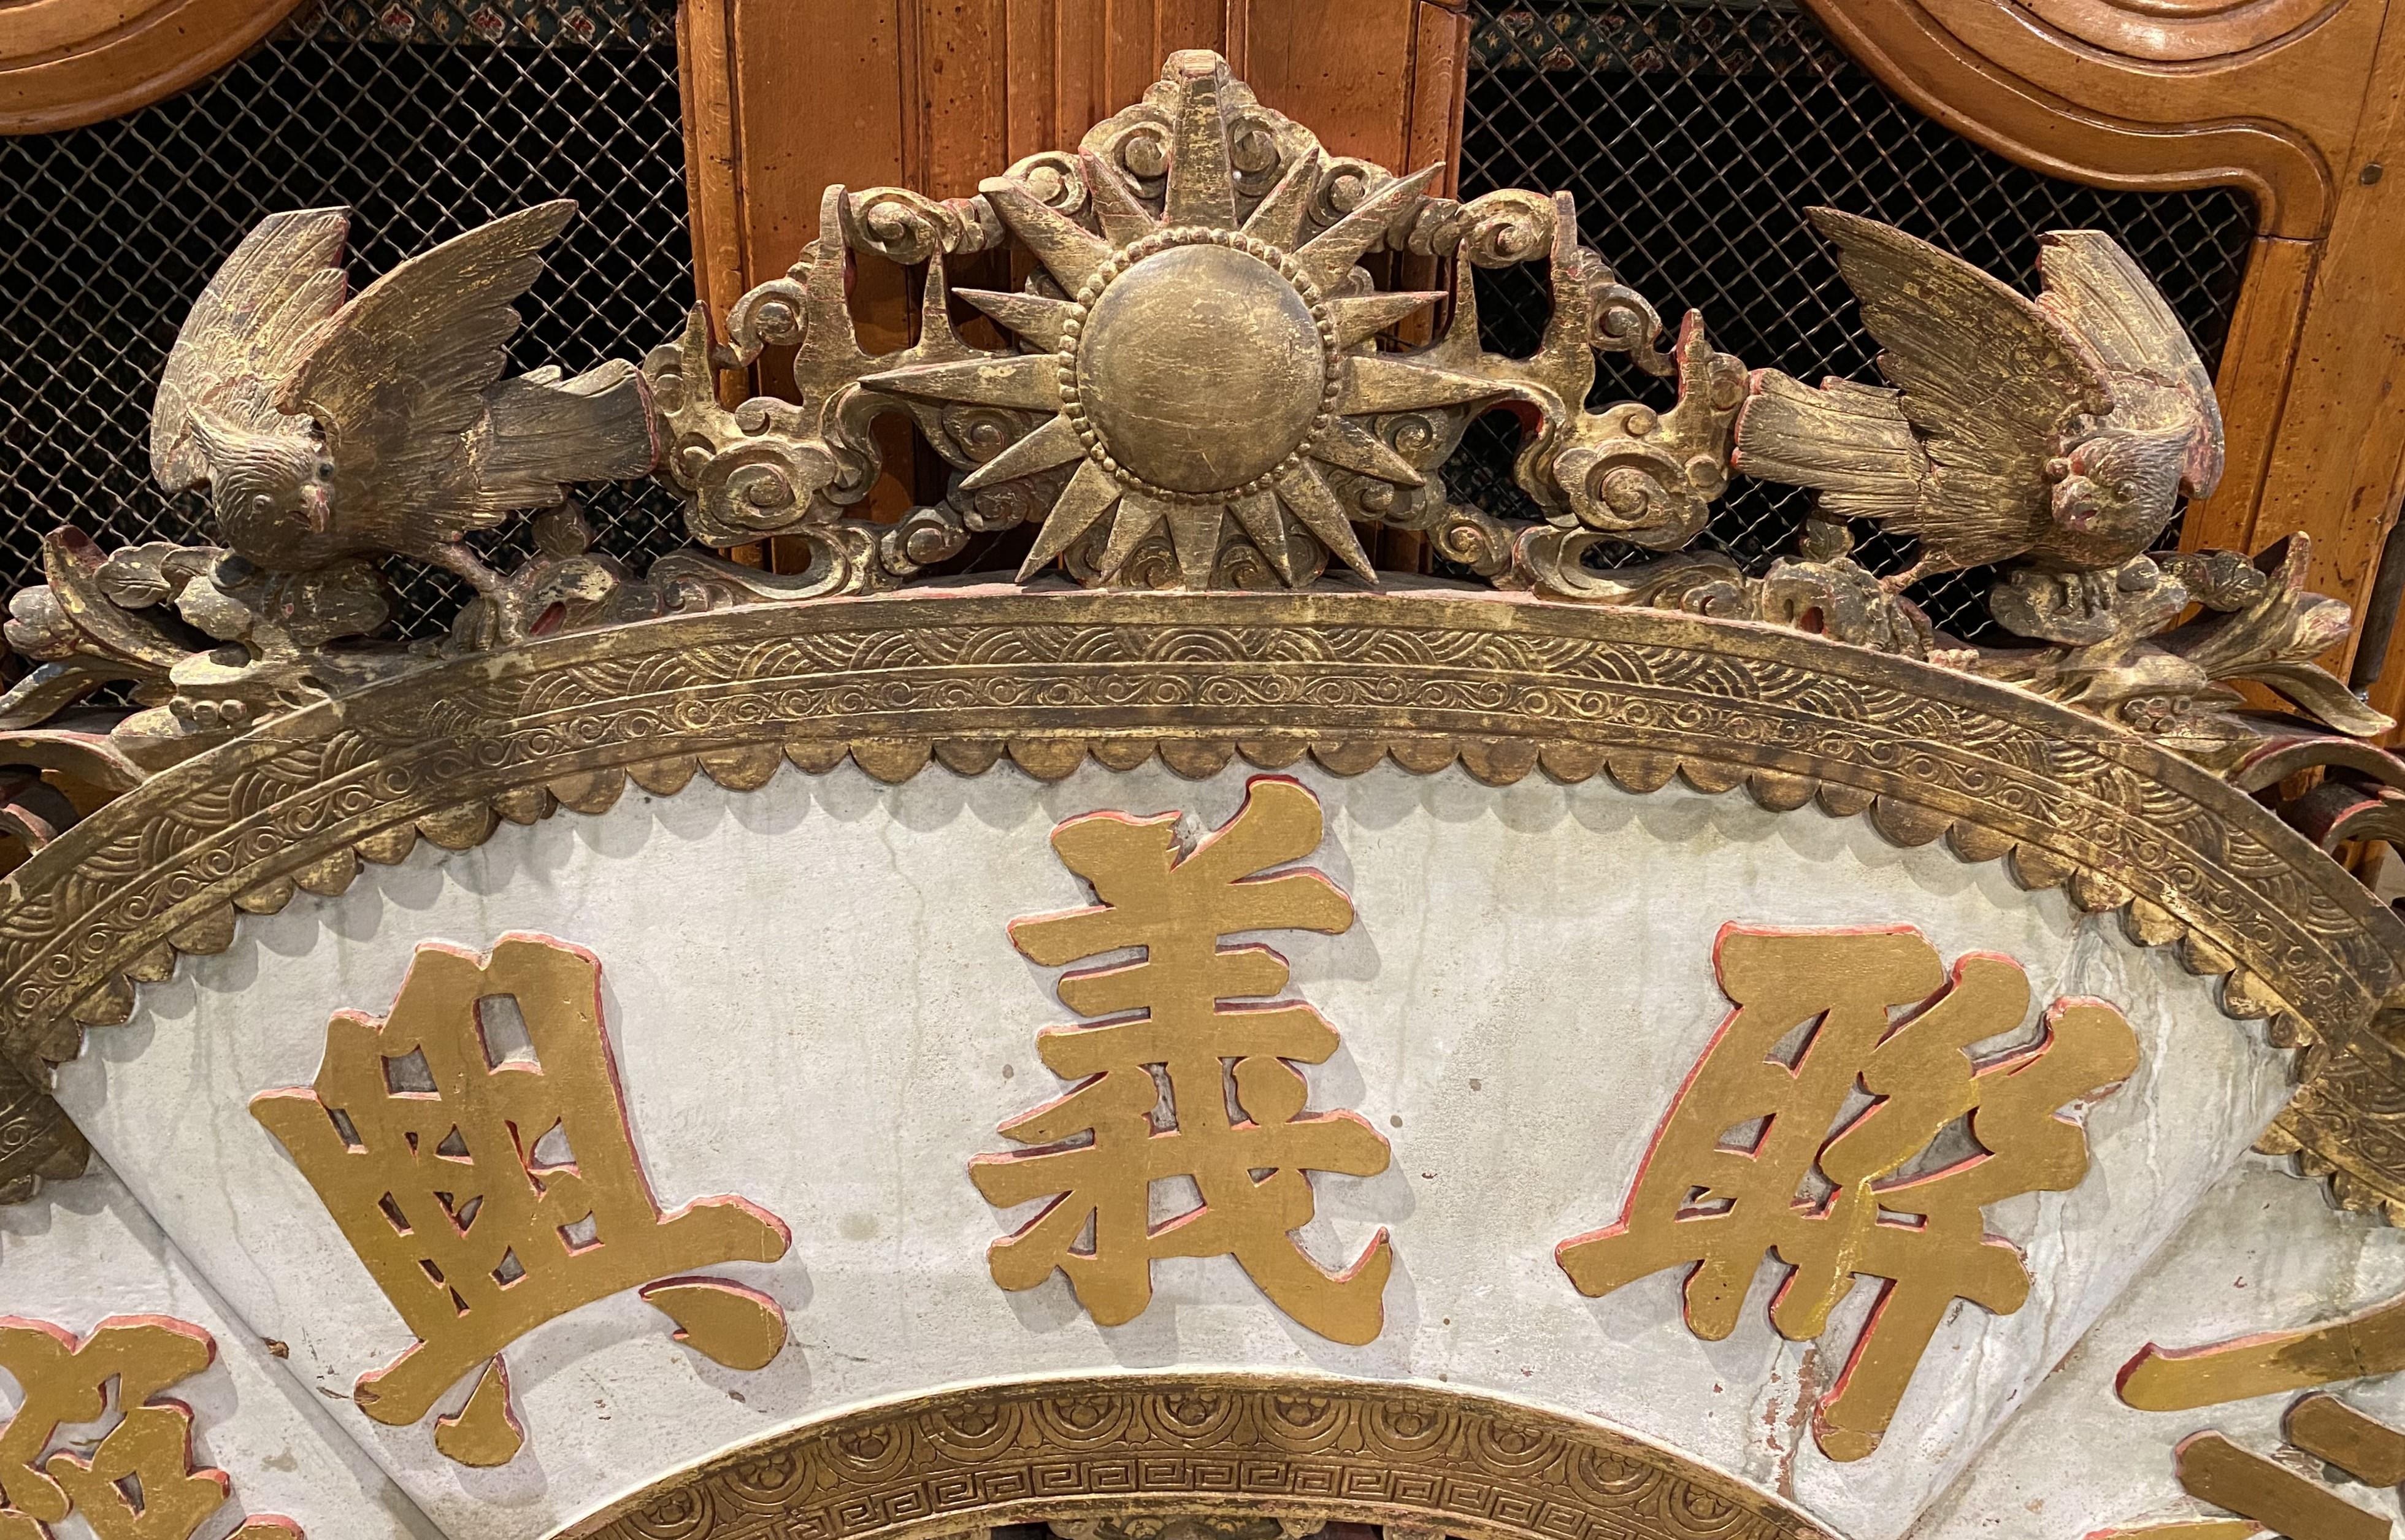 Eine feine chinesische dekorative geschnitzte hölzerne architektonische Giebel, höchstwahrscheinlich aus einem Tempel, seine Krone mit einem vergoldeten geschnitzten zentralen Stern flankiert von Pierce geschnitzten Vögel, Blumen, Rollwerk, und